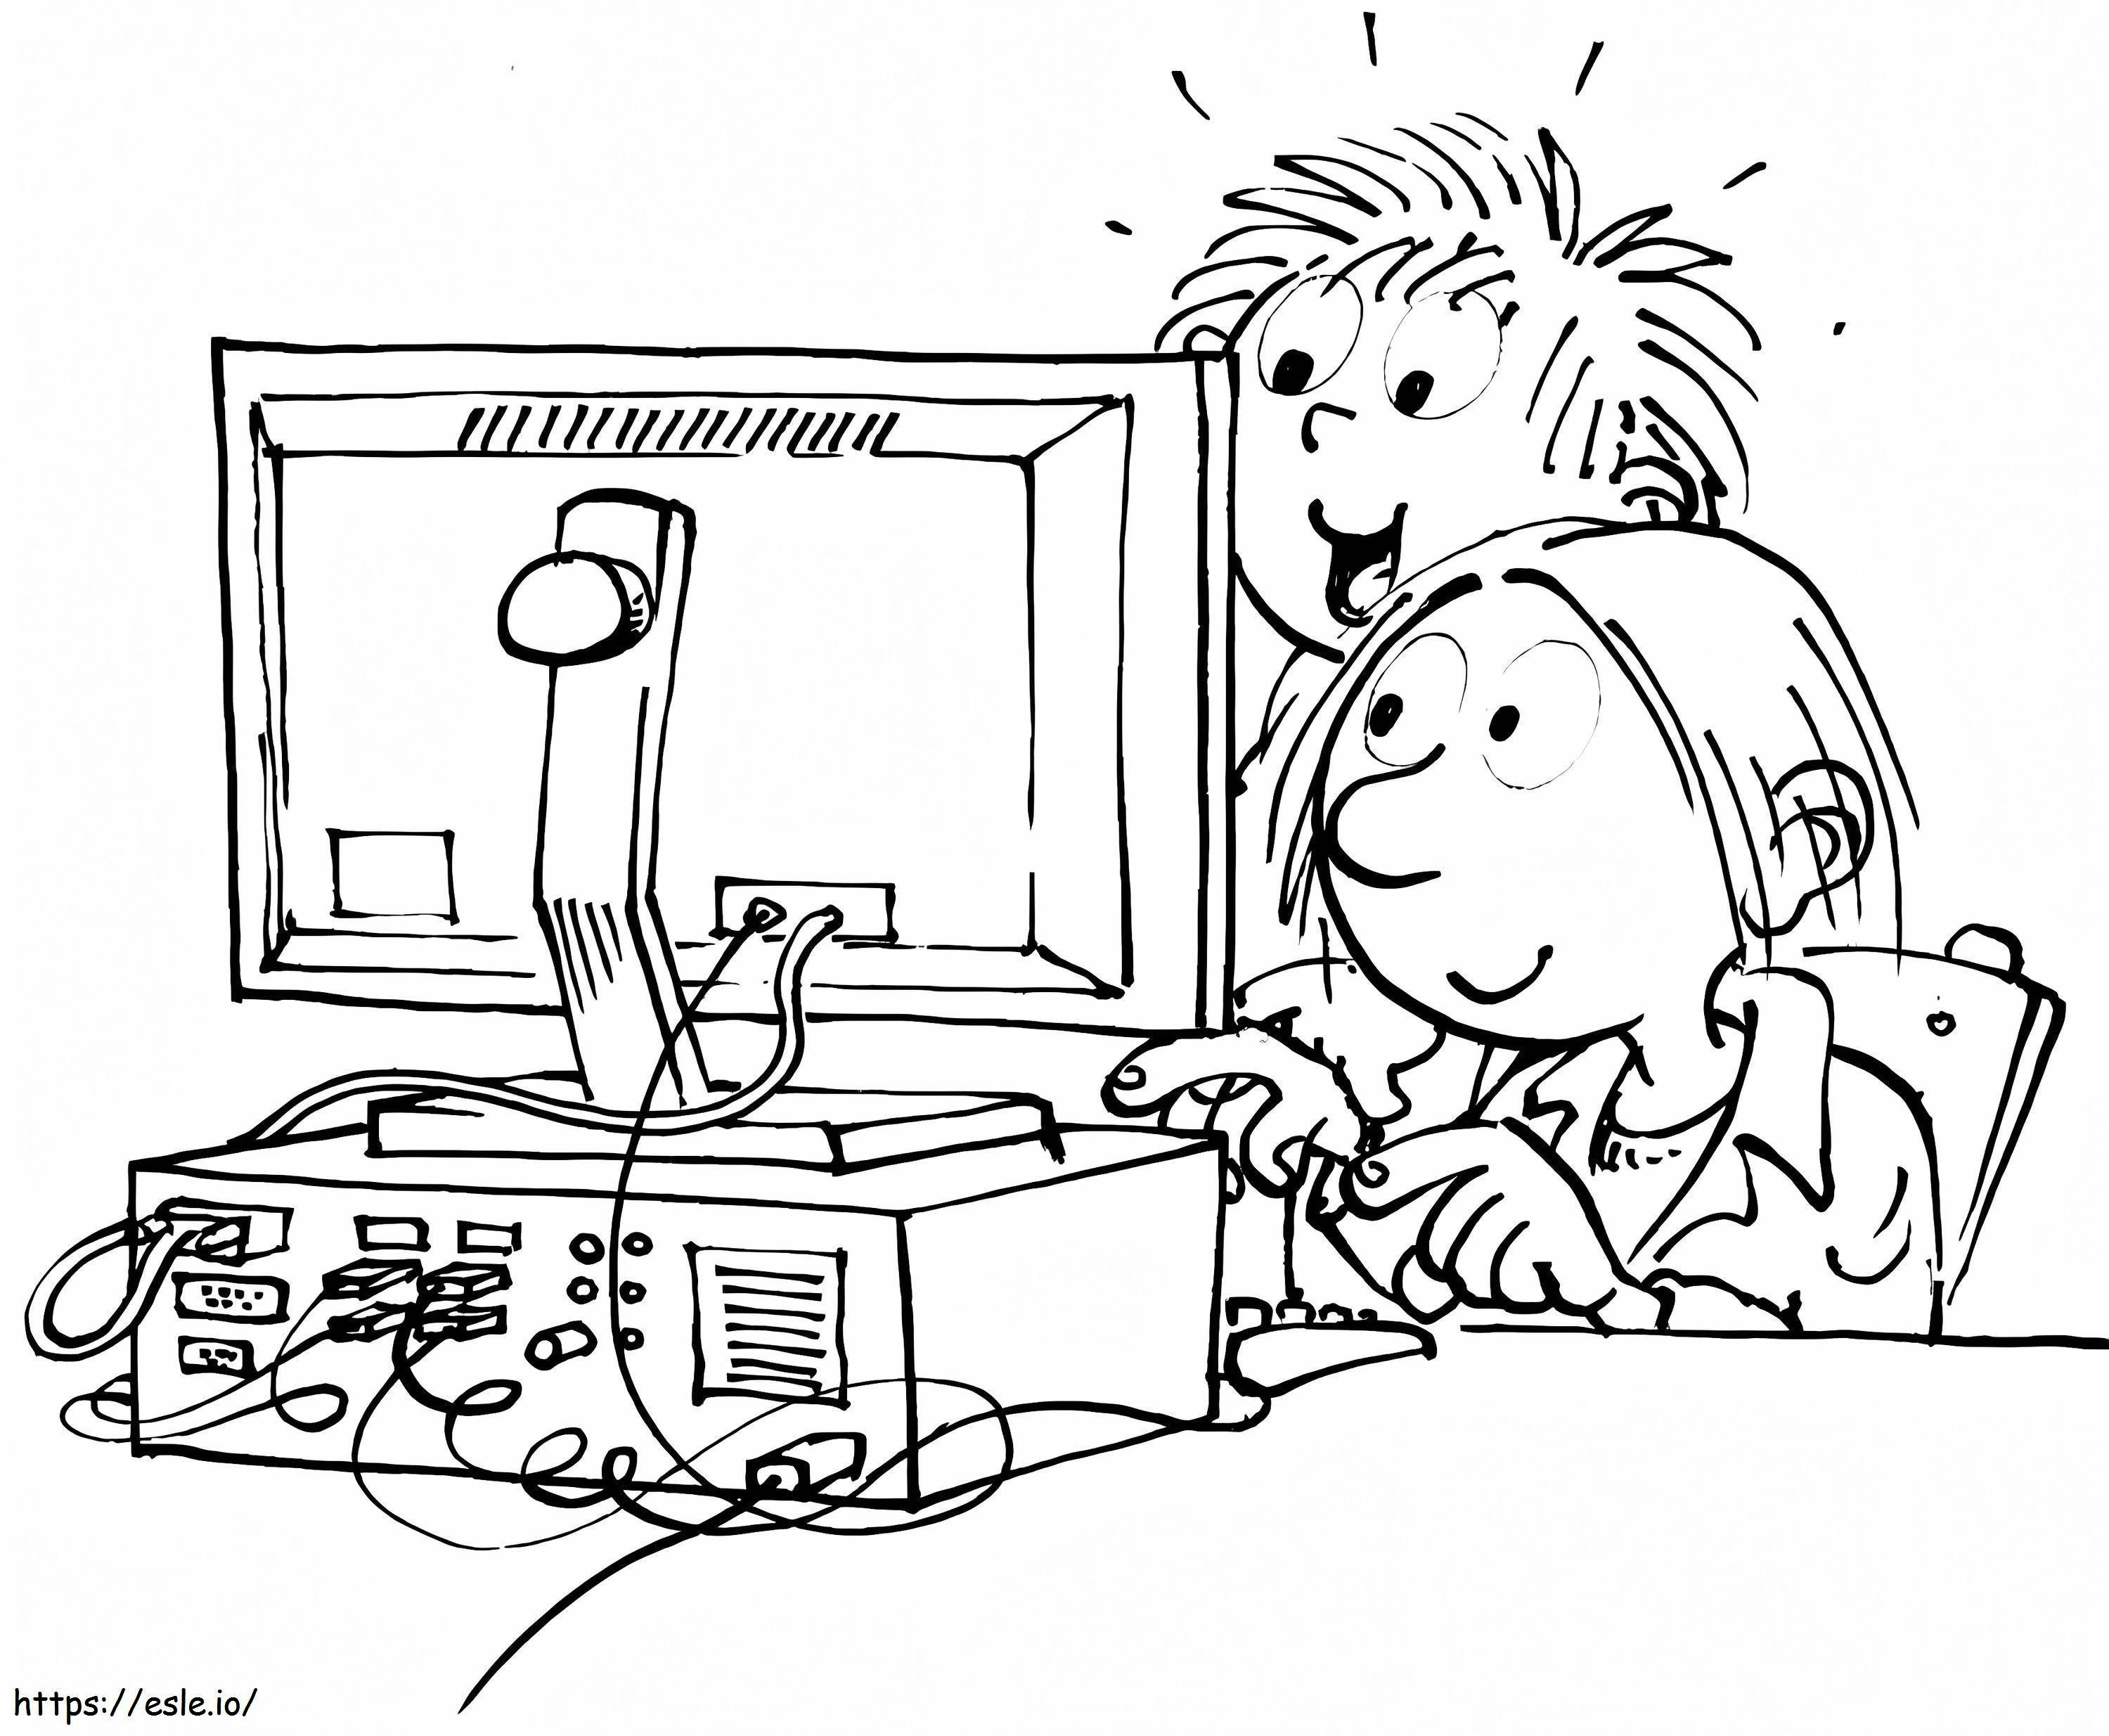 Kinder mit Computer ausmalbilder